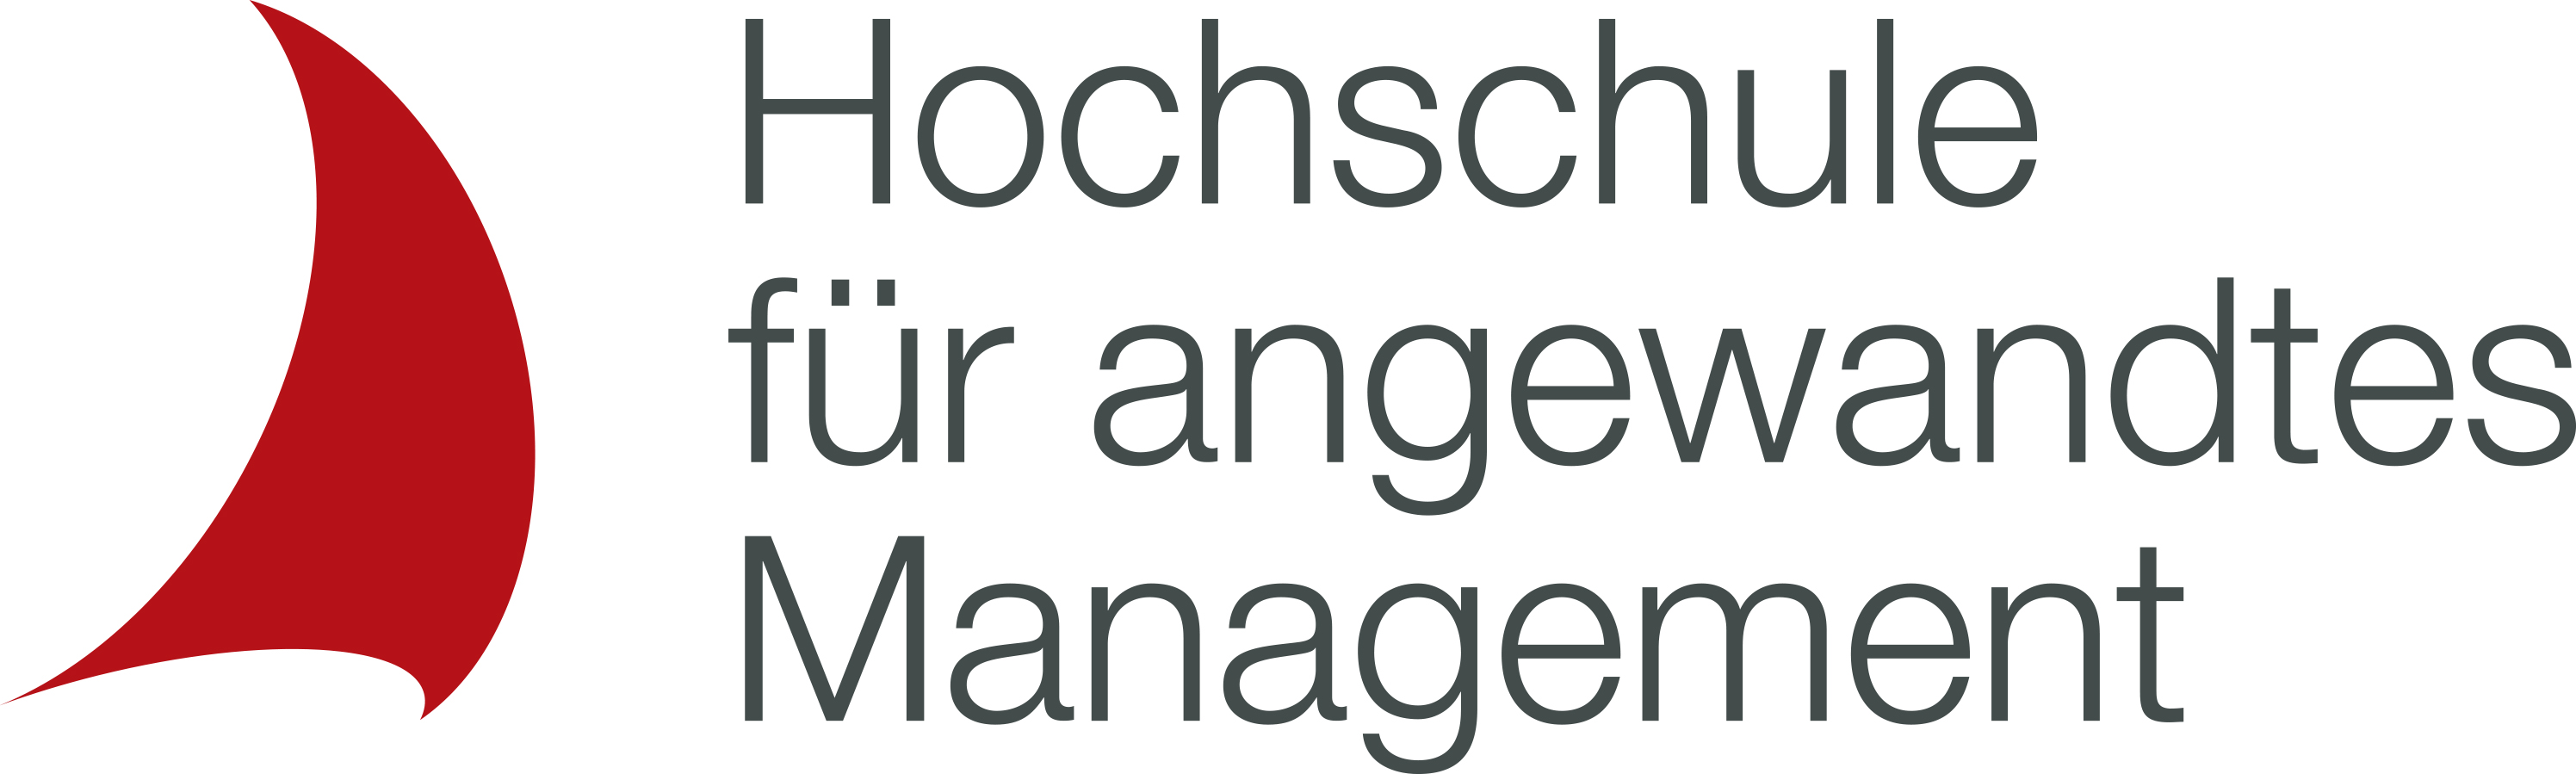 Hochschule für angewandtes Management - Studienort Hannover Logo